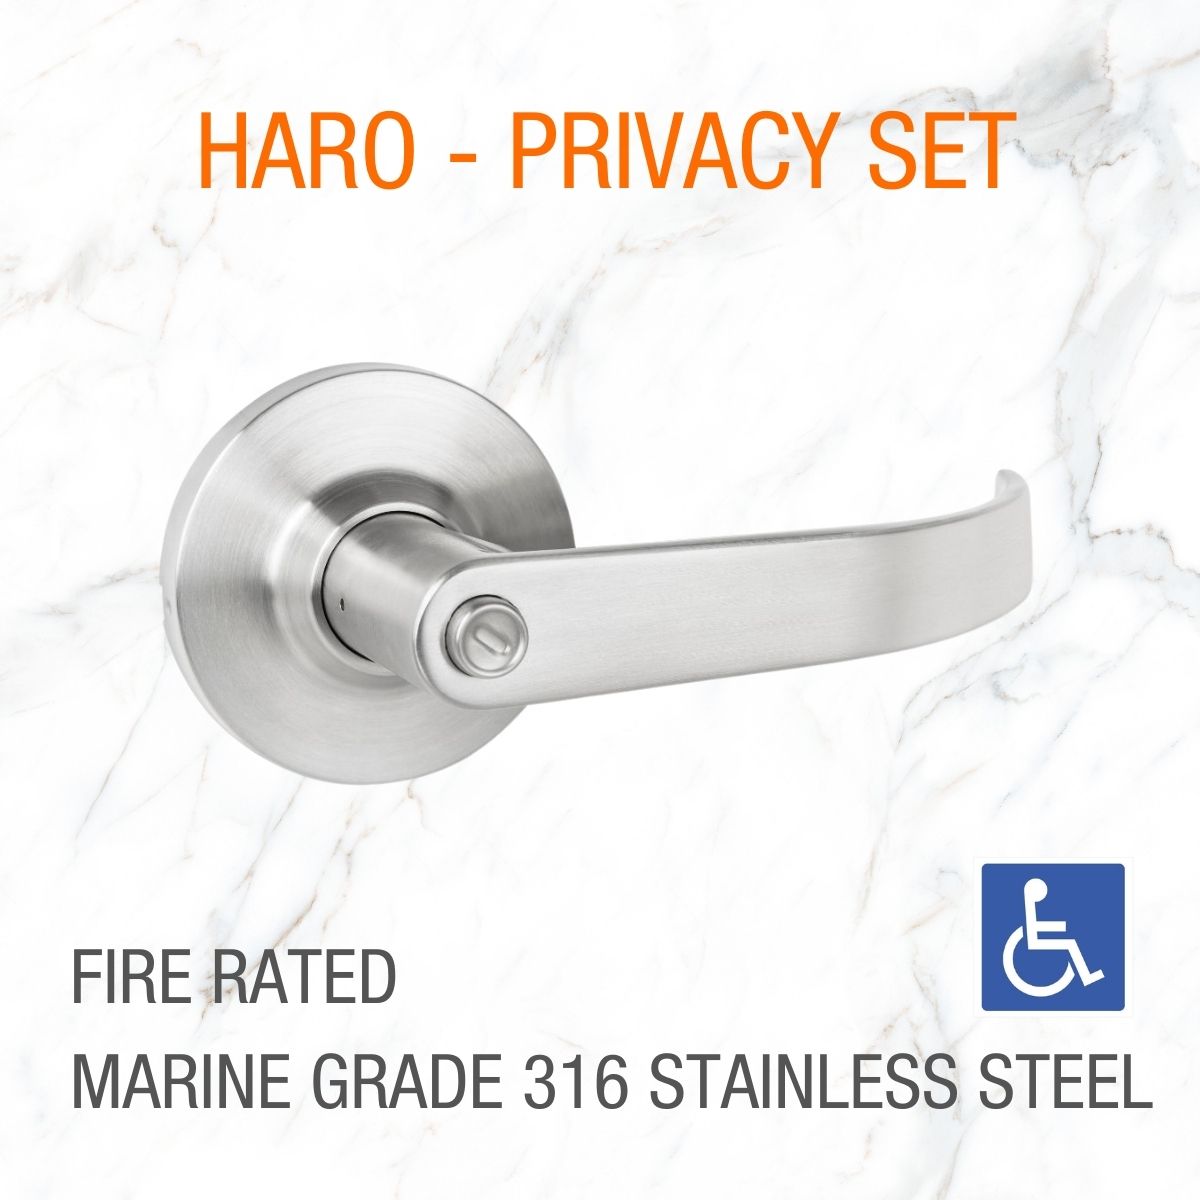 dda door handle haro fire rated privacy 316 marine grade 1